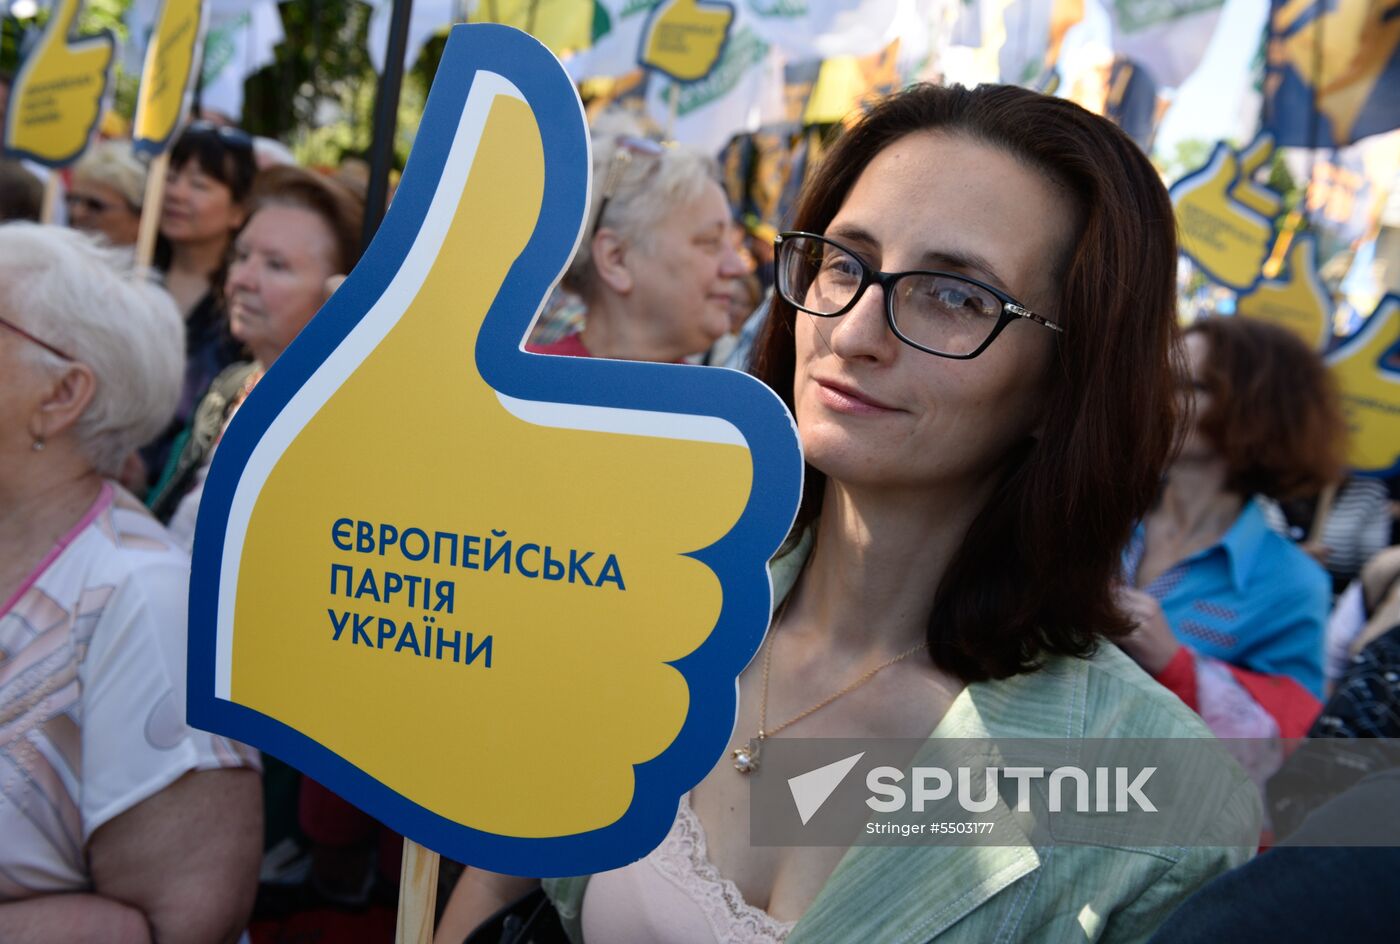 Protesters in Kiev demand electoral reforms